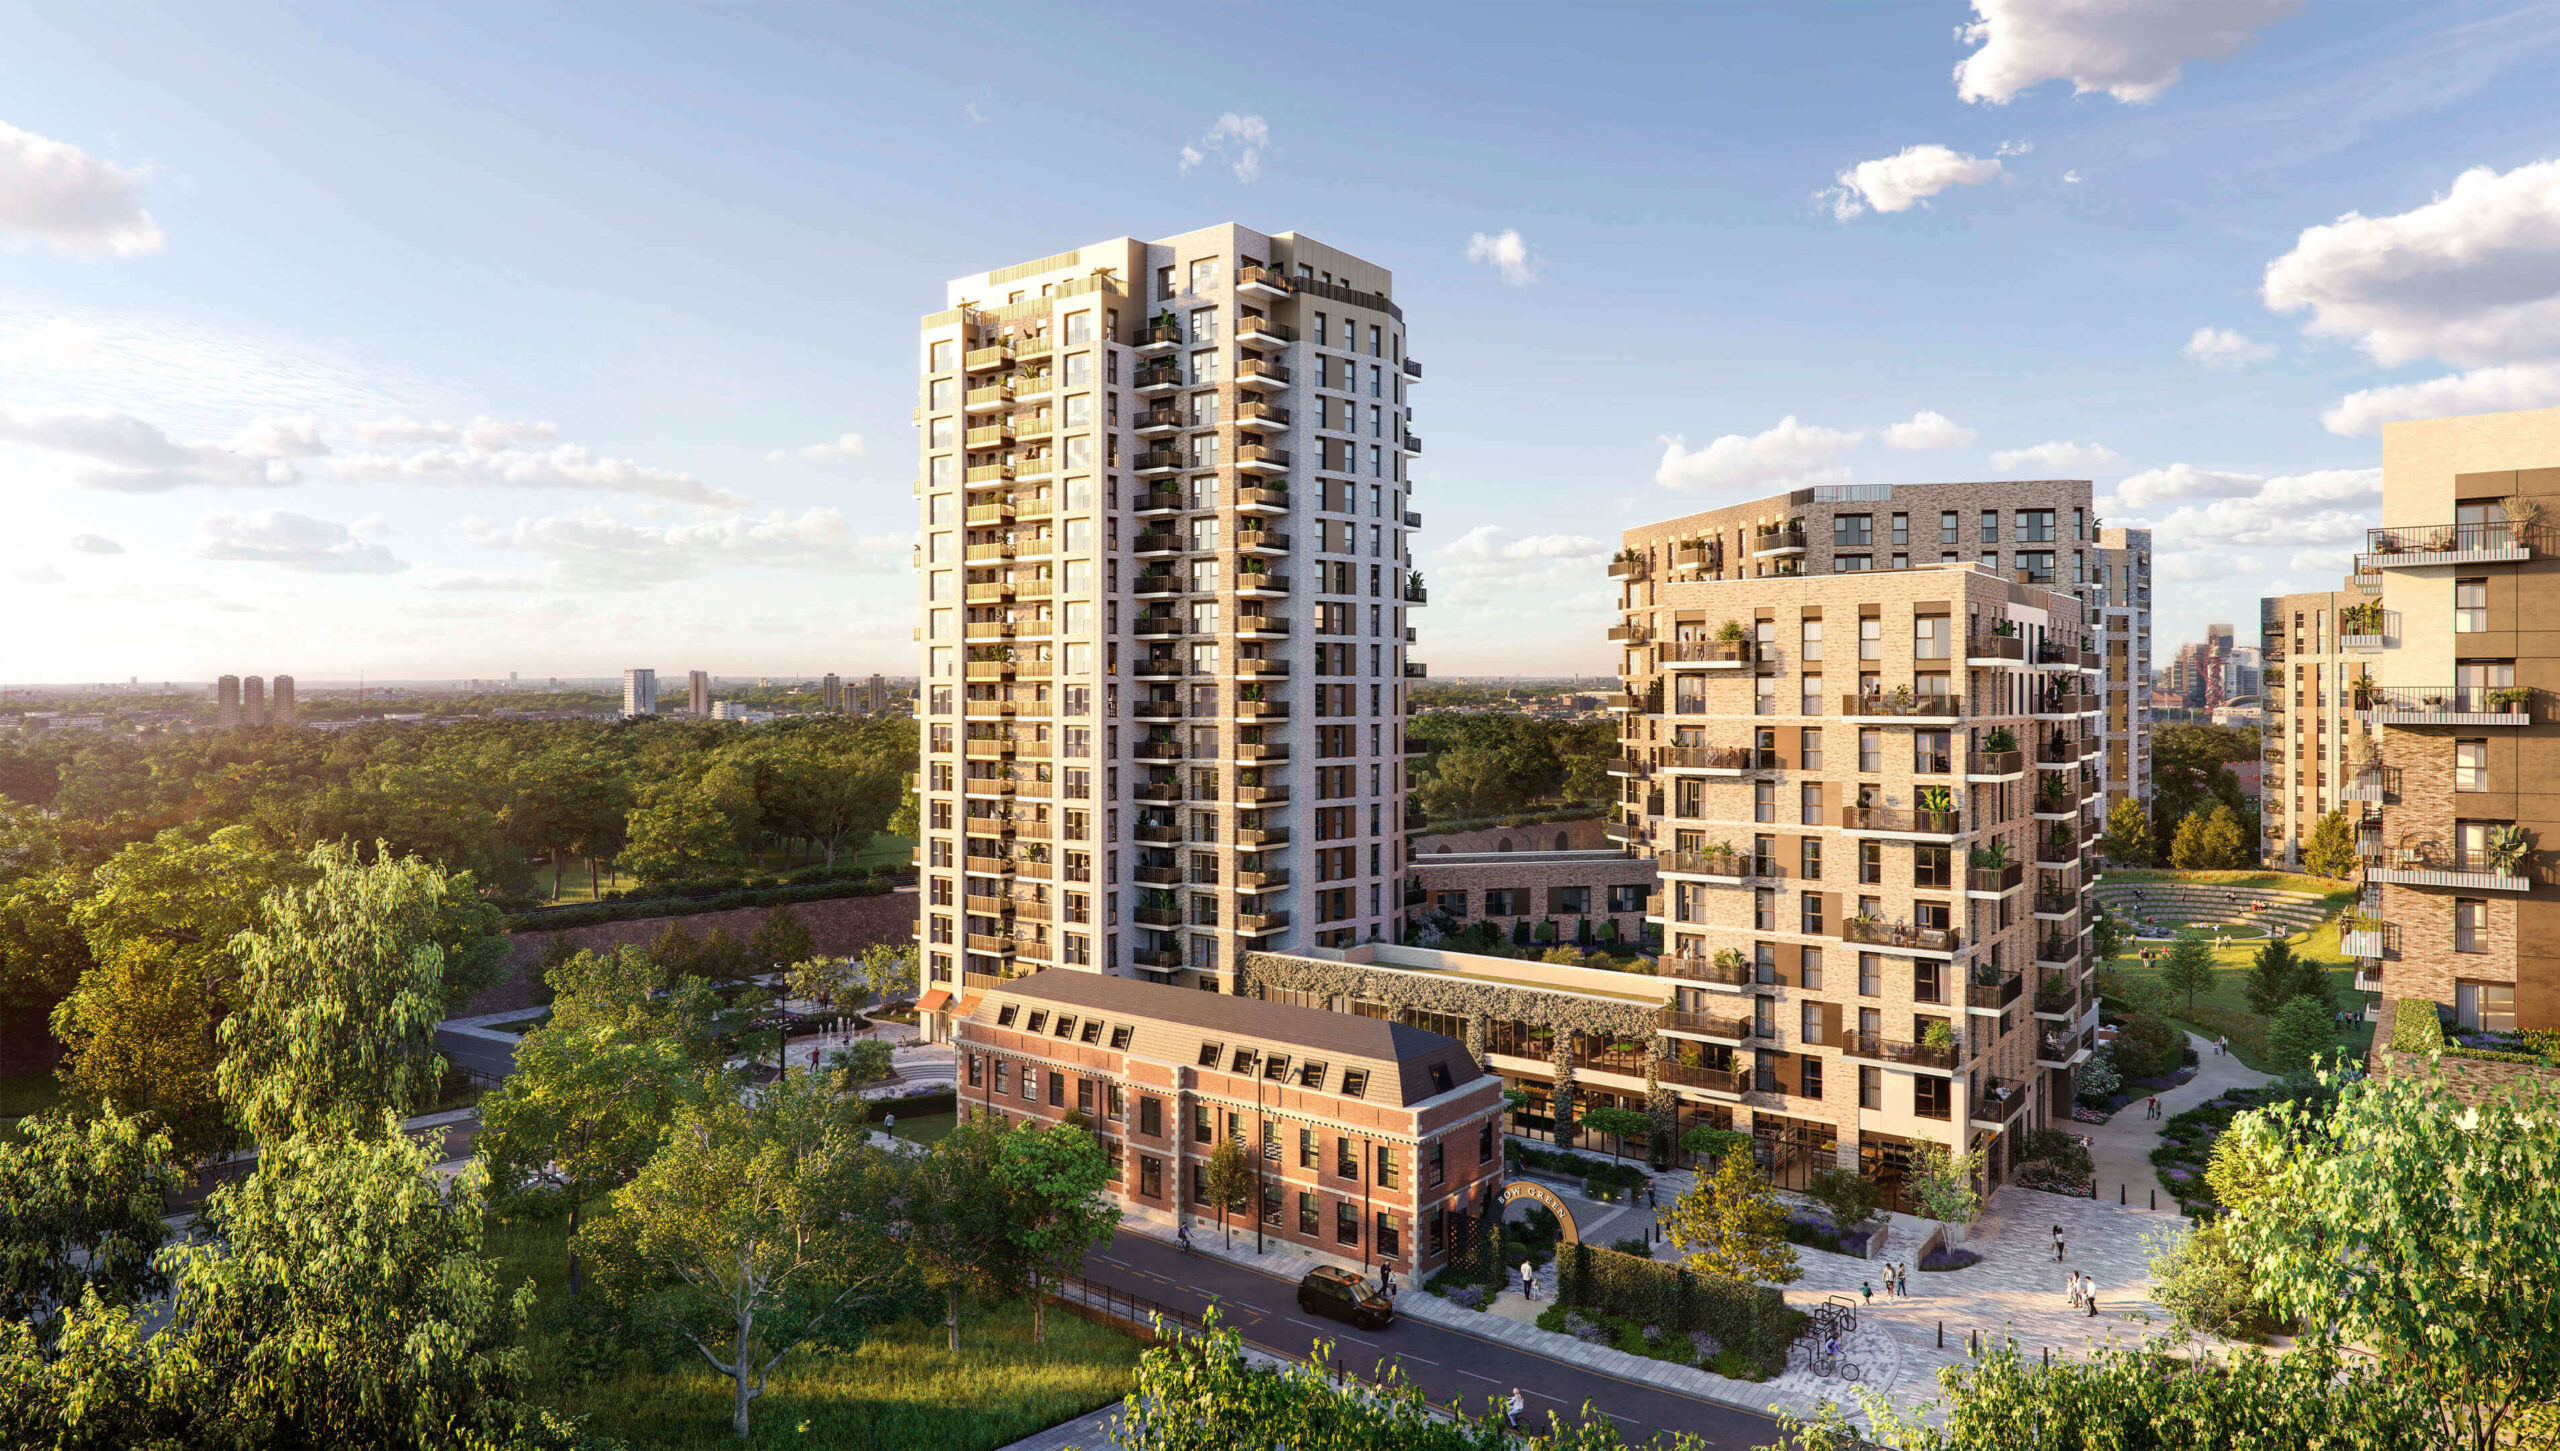 Bow Green cung cấp 1.450 căn hộ 40-123 m2 có mức giá từ 14 tỷ VNĐ cùng pháp lý sở hữu có thời hạn 999 năm tại lõi “tam giác vàng” thịnh vượng trung tâm Thủ đô, Canary Wharf và Stratford phía Đông London.